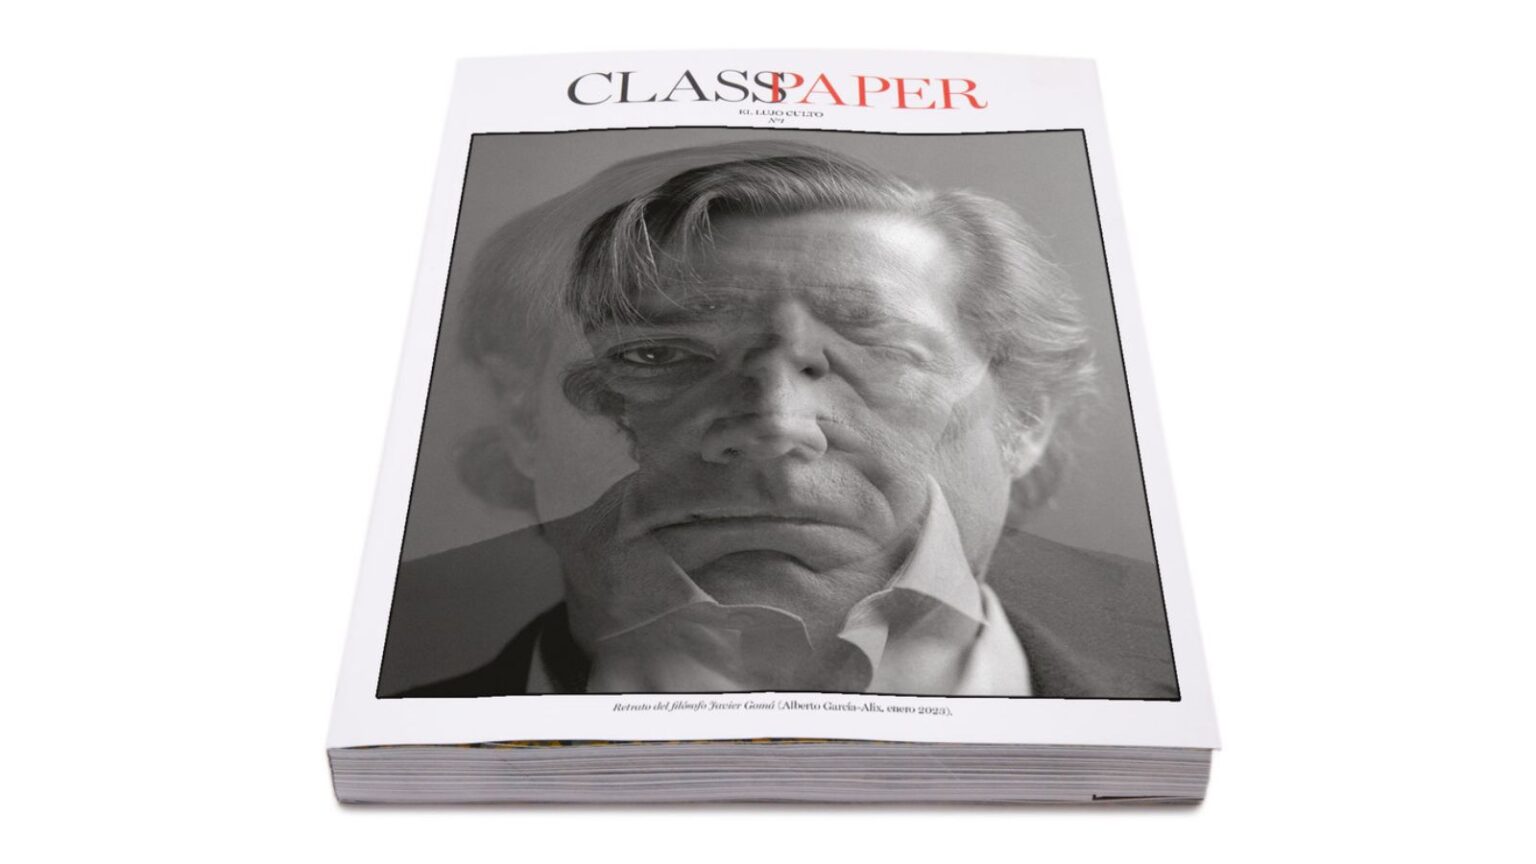 THE OBJECTIVE firma una alianza con la revista de lujo ‘Classpaper’